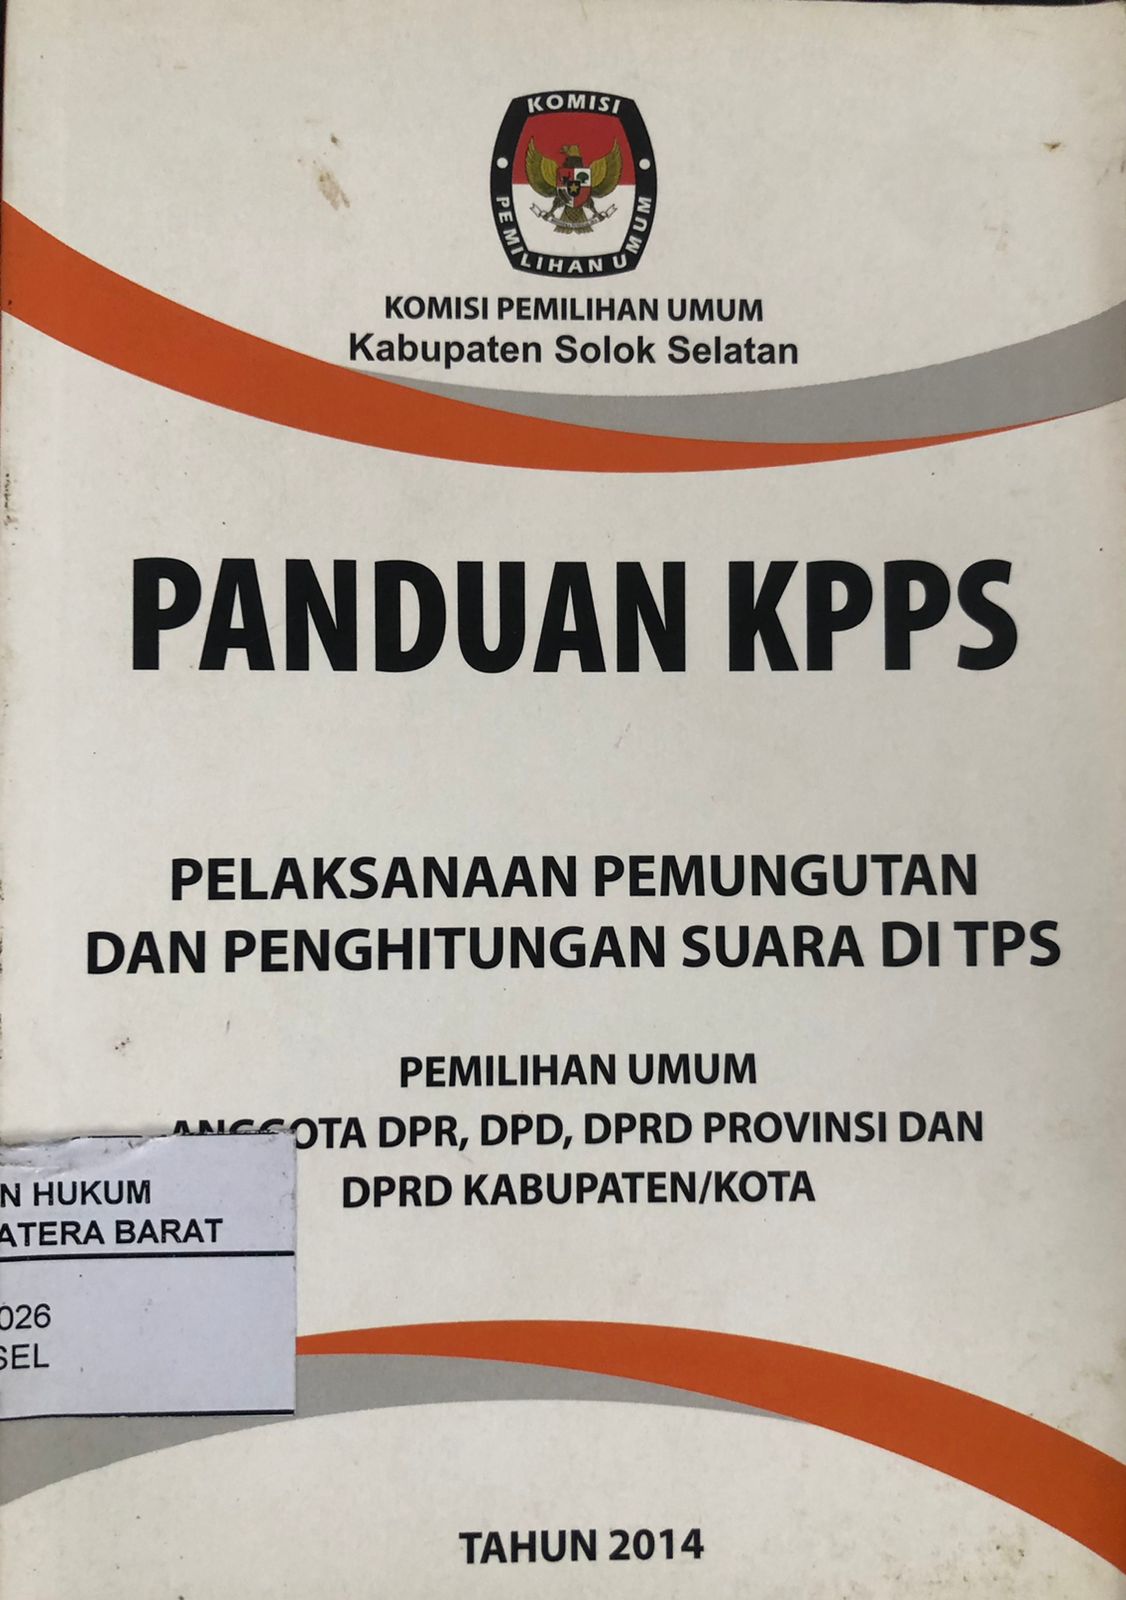 Panduan KPPS Pelaksanaan Pemungutan dan Pennghitung Suara di TPS Pemilu Anggota DPR,DPD,DPRD Provinsi dan DPRD Kabupaten/Kota